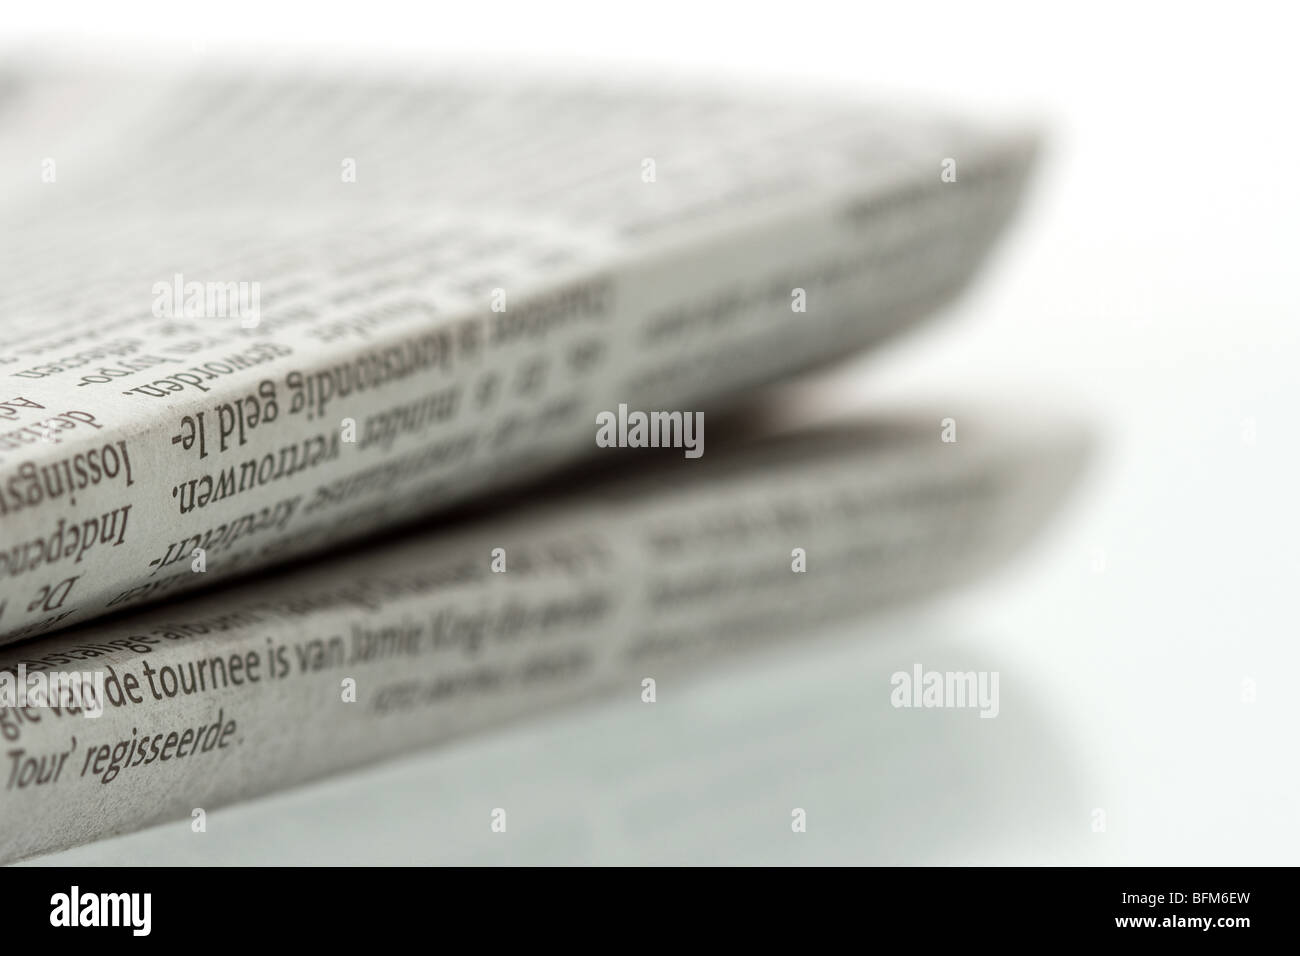 Gefaltete Zeitung auf glänzenden reflektierenden Oberfläche - Nahaufnahme Fokus auf Vordergrund gedreht Stockfoto